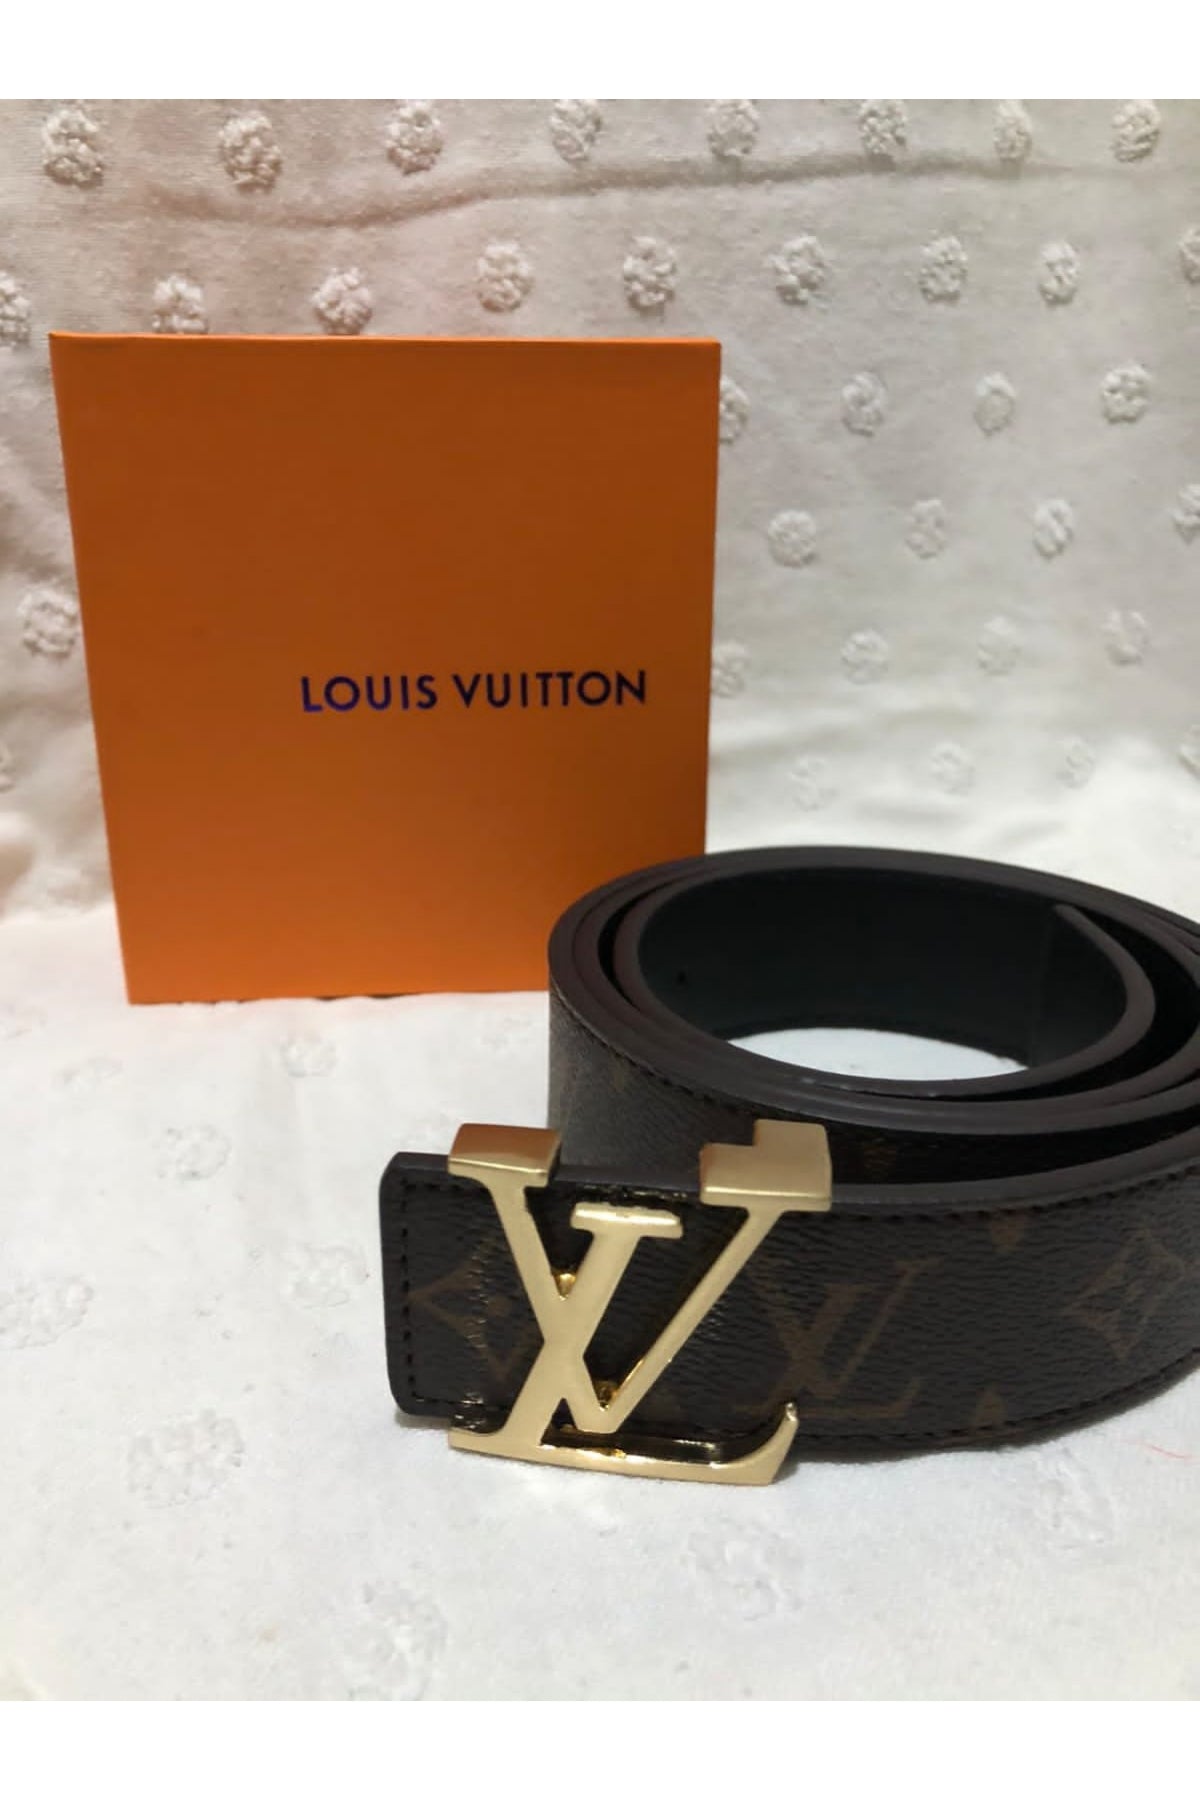 Louis Vuitton - Buckel Leather Belt - UAE